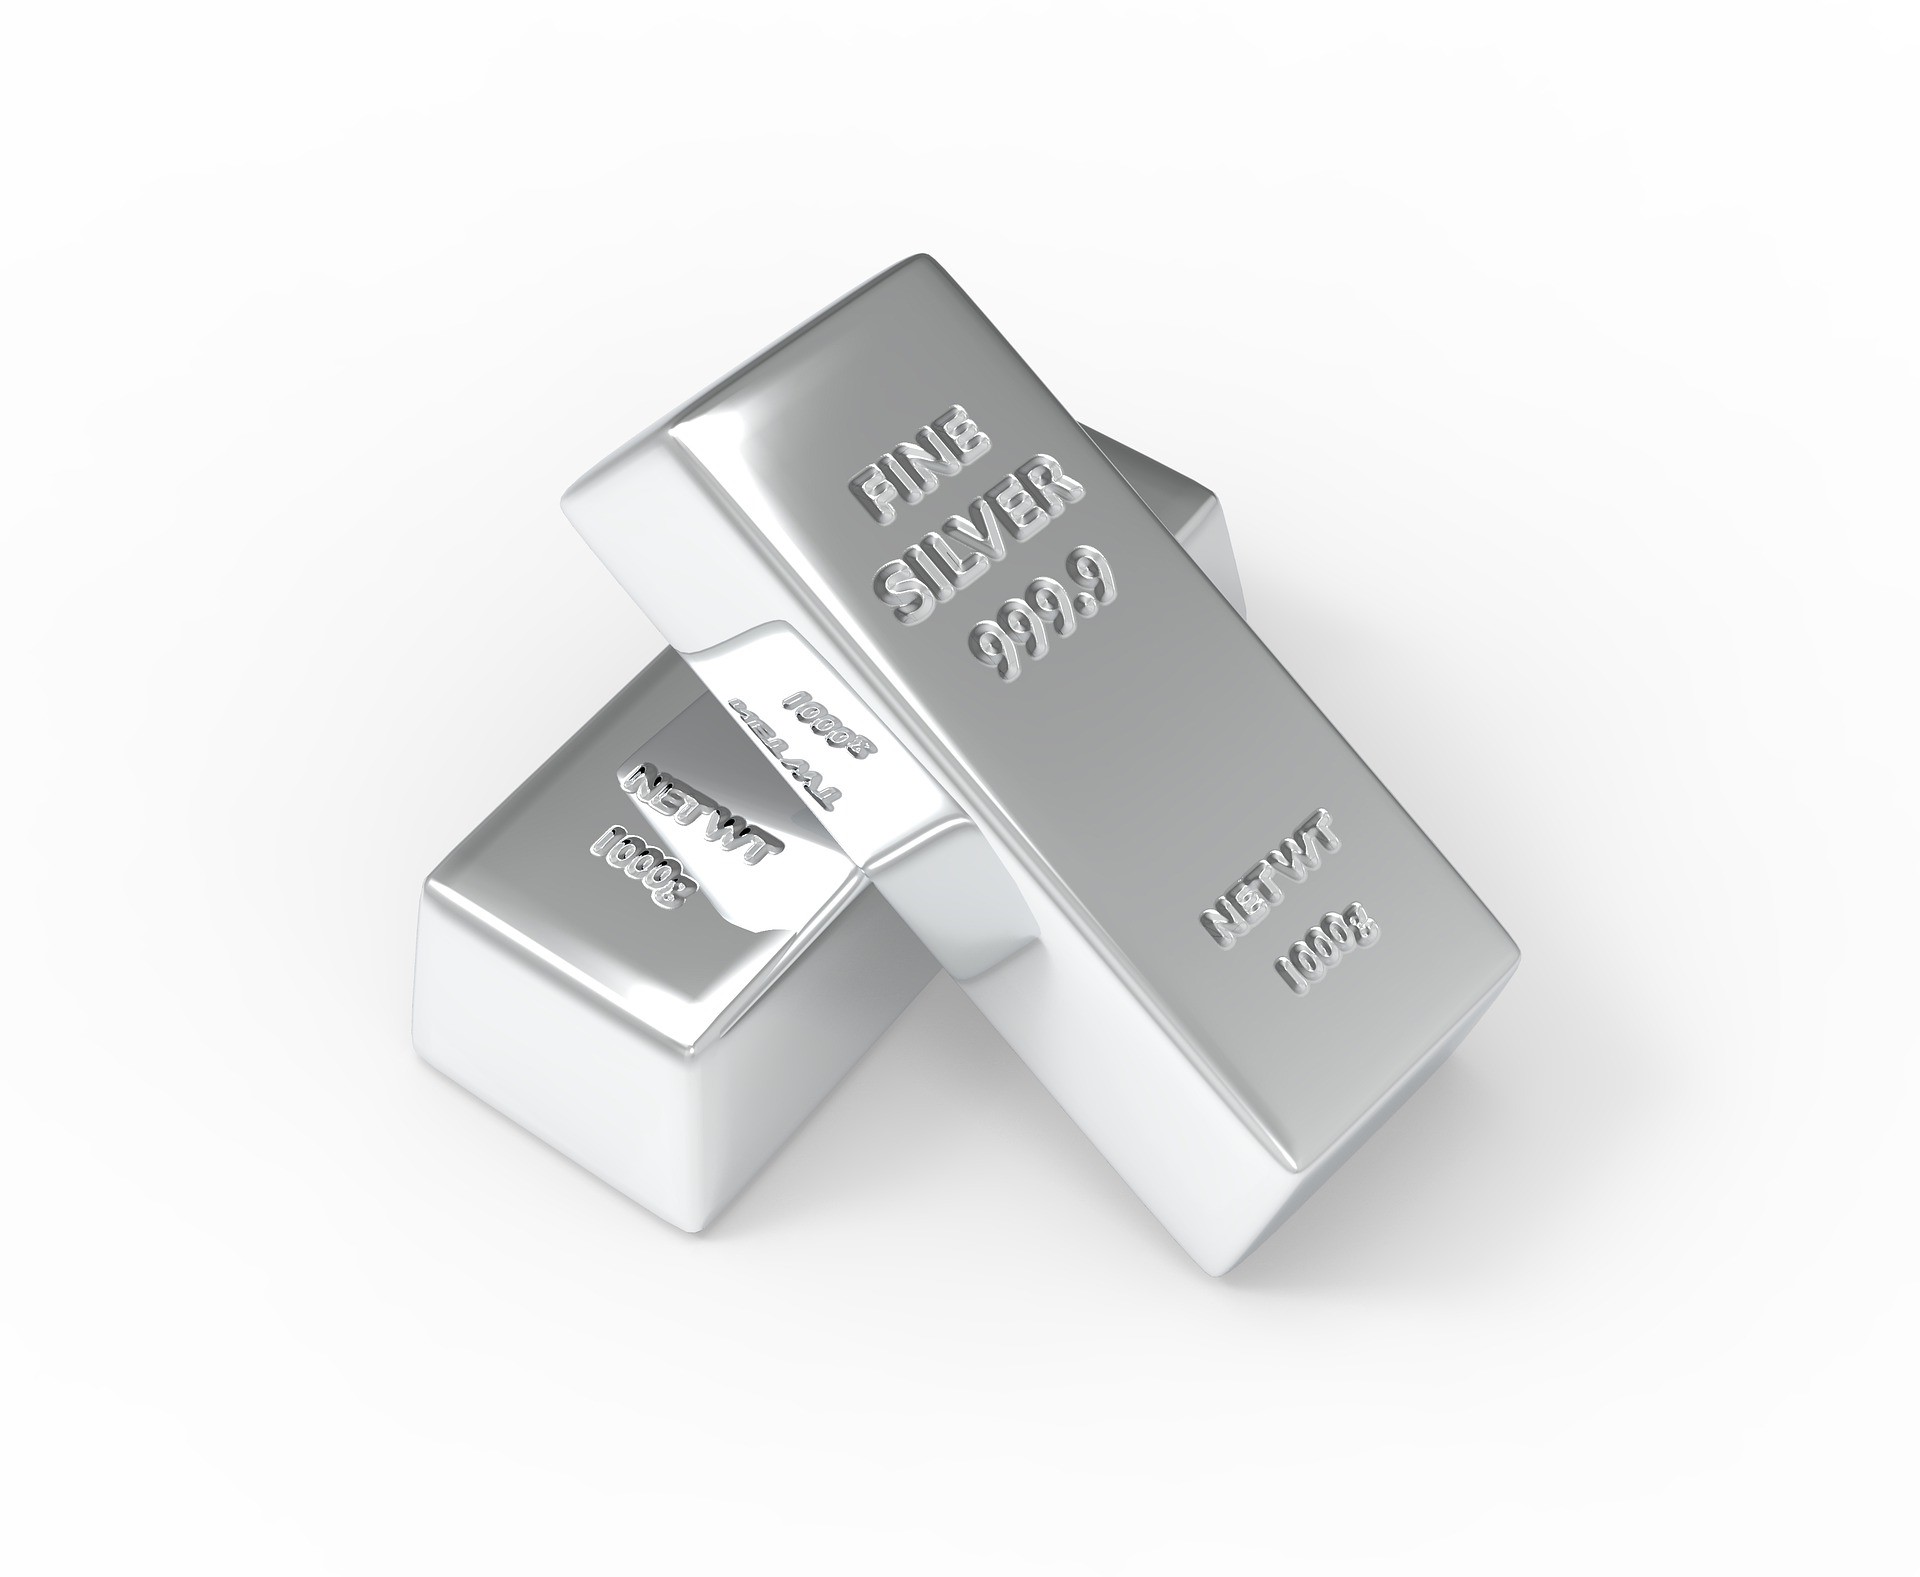 Xtrackers IE Physical Silver ETC Securities (XSLR ETC) investerar i silver. Den totala kostnadskvoten uppgår till 0,20 % p.a. ETC replikerar utvecklingen av det underliggande indexet med en skuldförbindelse med säkerheter som backas upp av fysiska innehav av ädelmetallen. Xtrackers IE Physical Silver ETC Securities har tillgångar på 116 miljoner euro under förvaltning. XSLR ETC är äldre än 1 år och har sin hemvist i Irland.